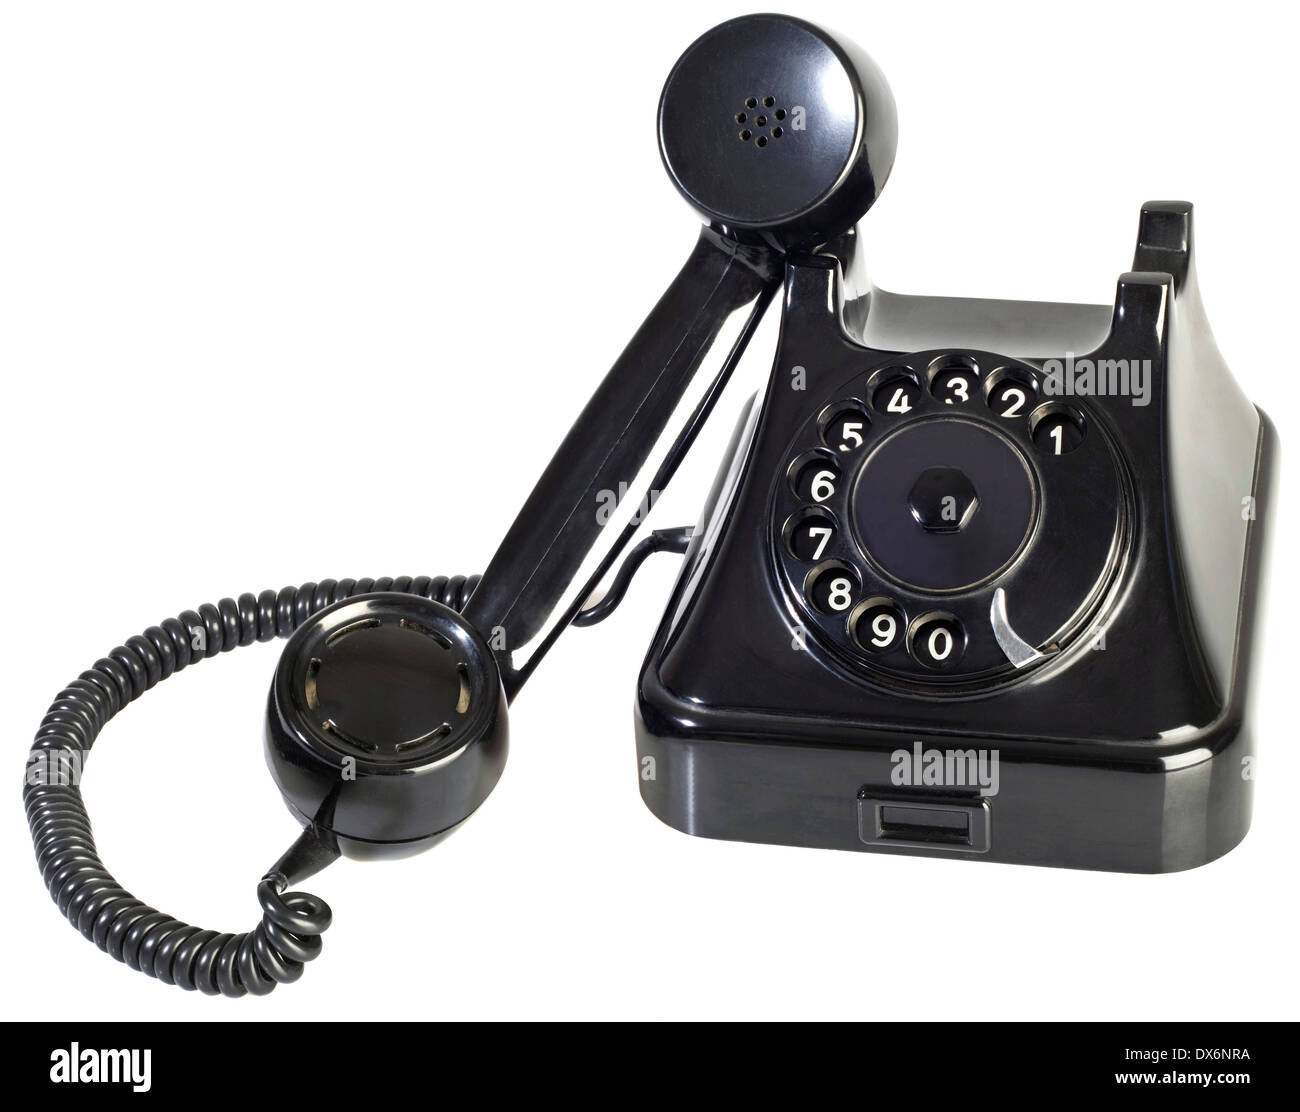 Alte schwarze Bakelit Telefon mit Wählscheibe Isolated on White Background Stockfoto